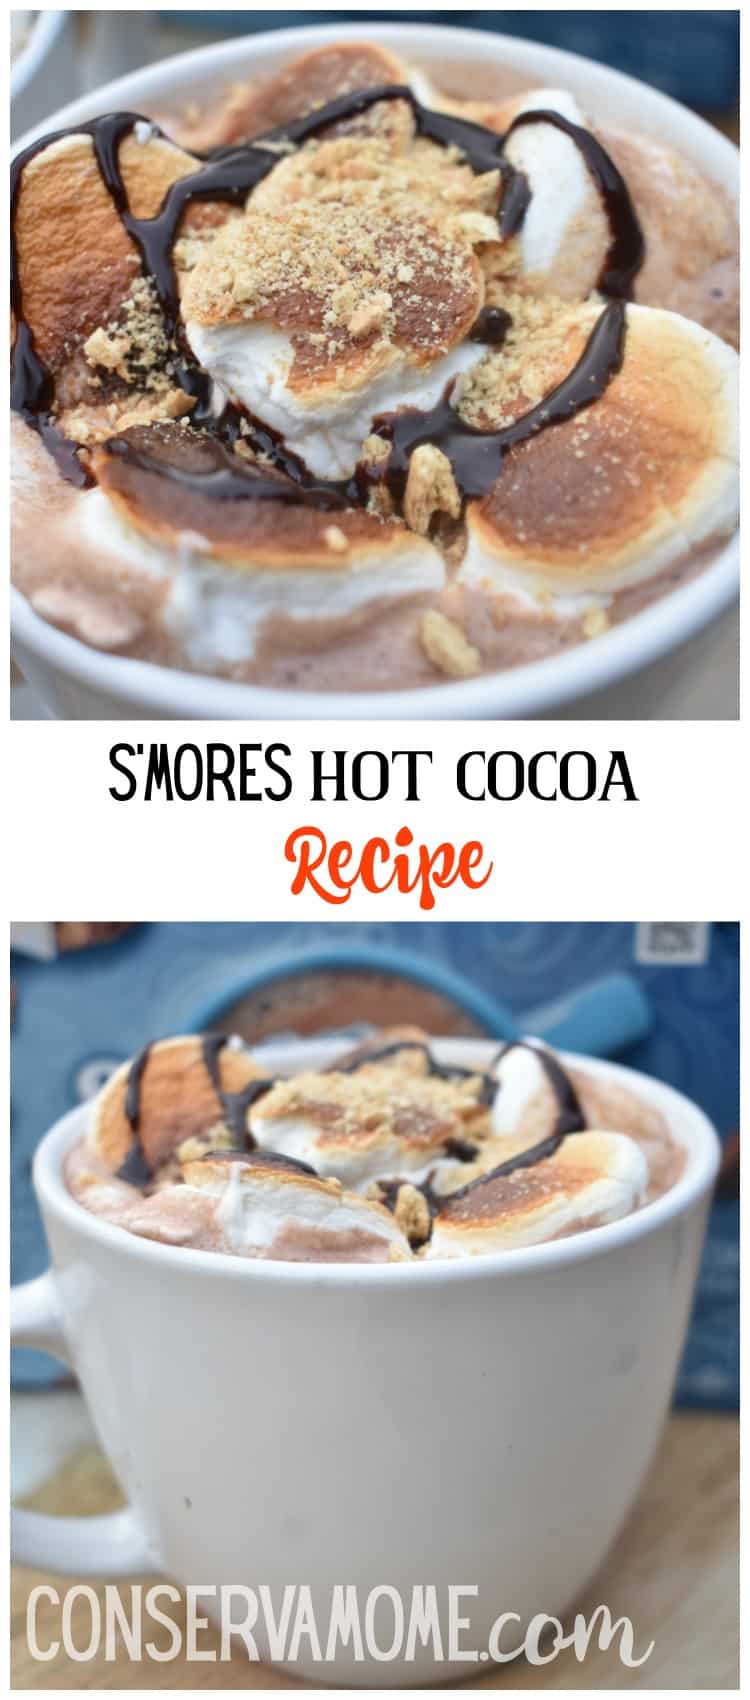 S'mores Hot cocoa recipe